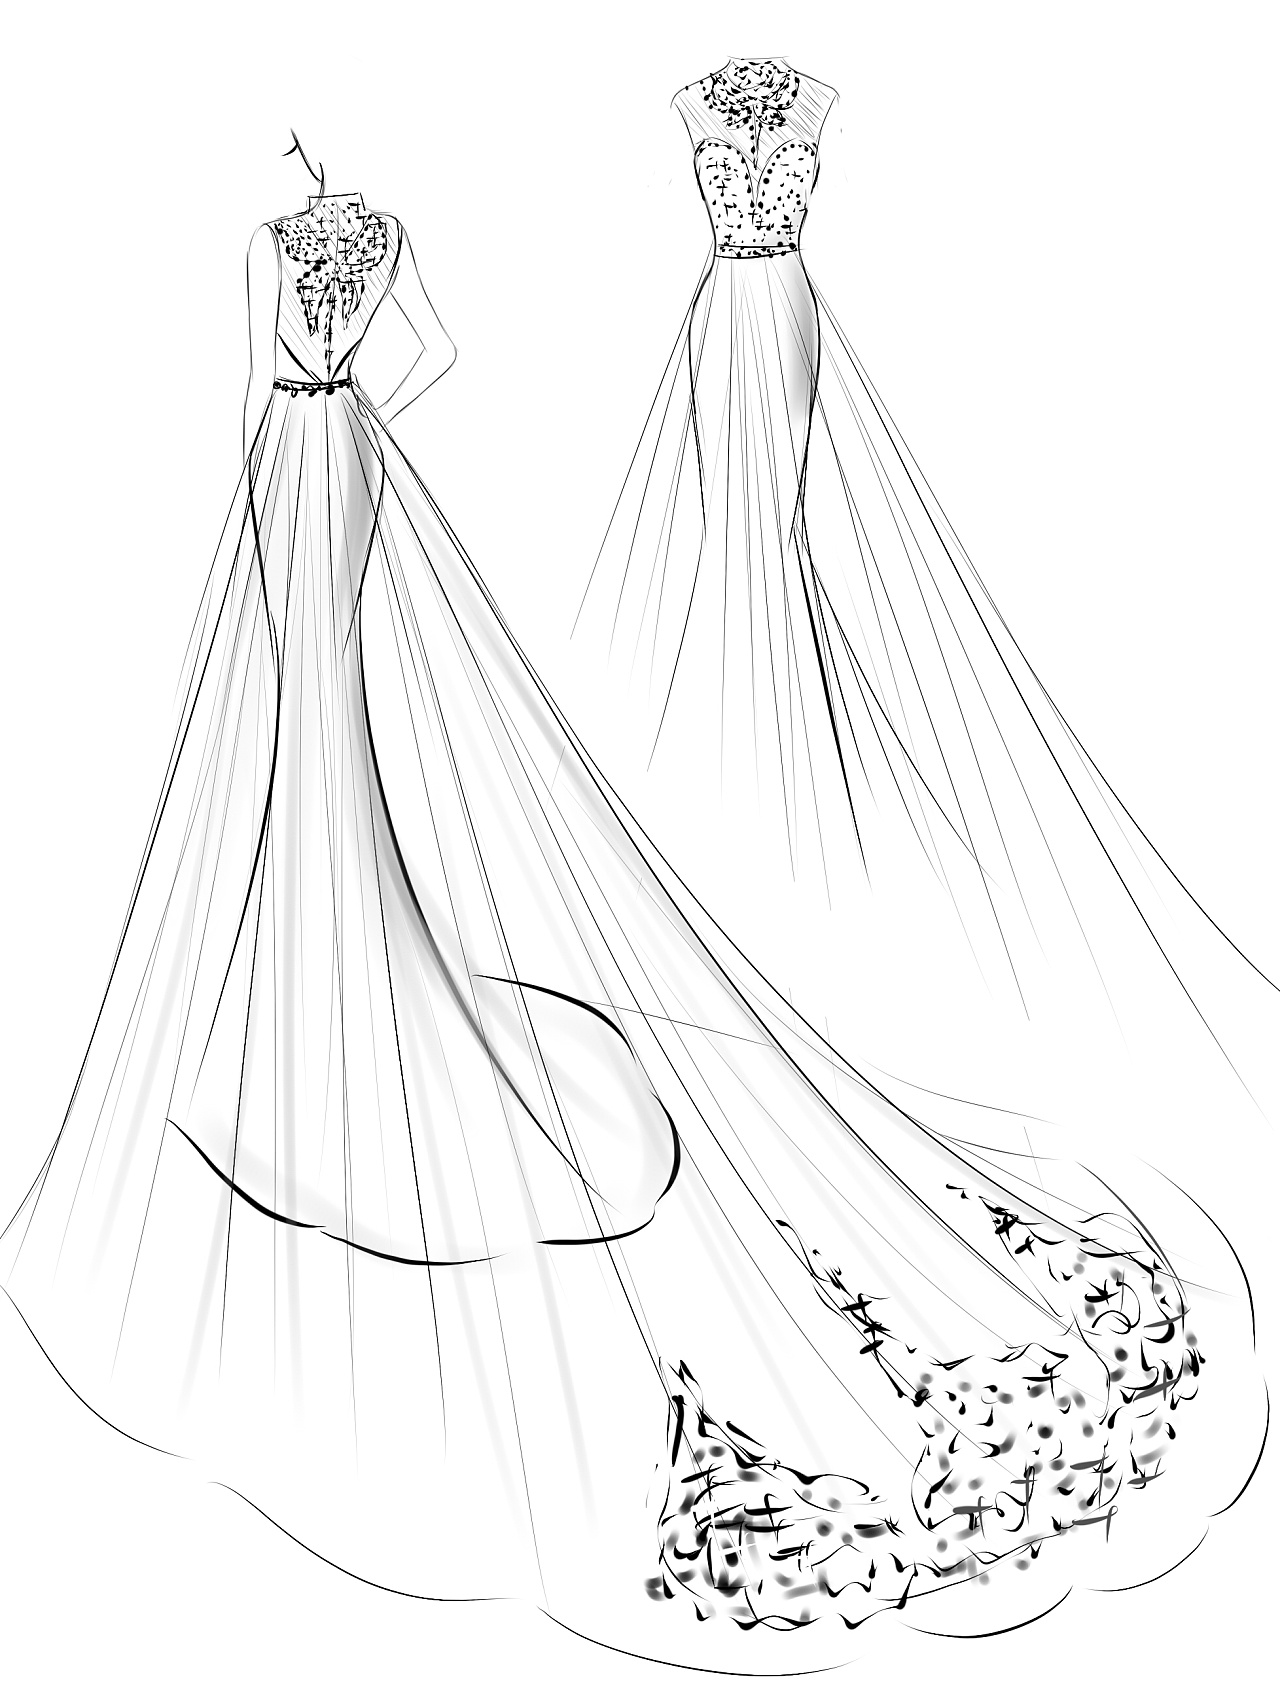 婚纱高跟鞋设计图手稿_高跟鞋设计图铅笔手稿(2)